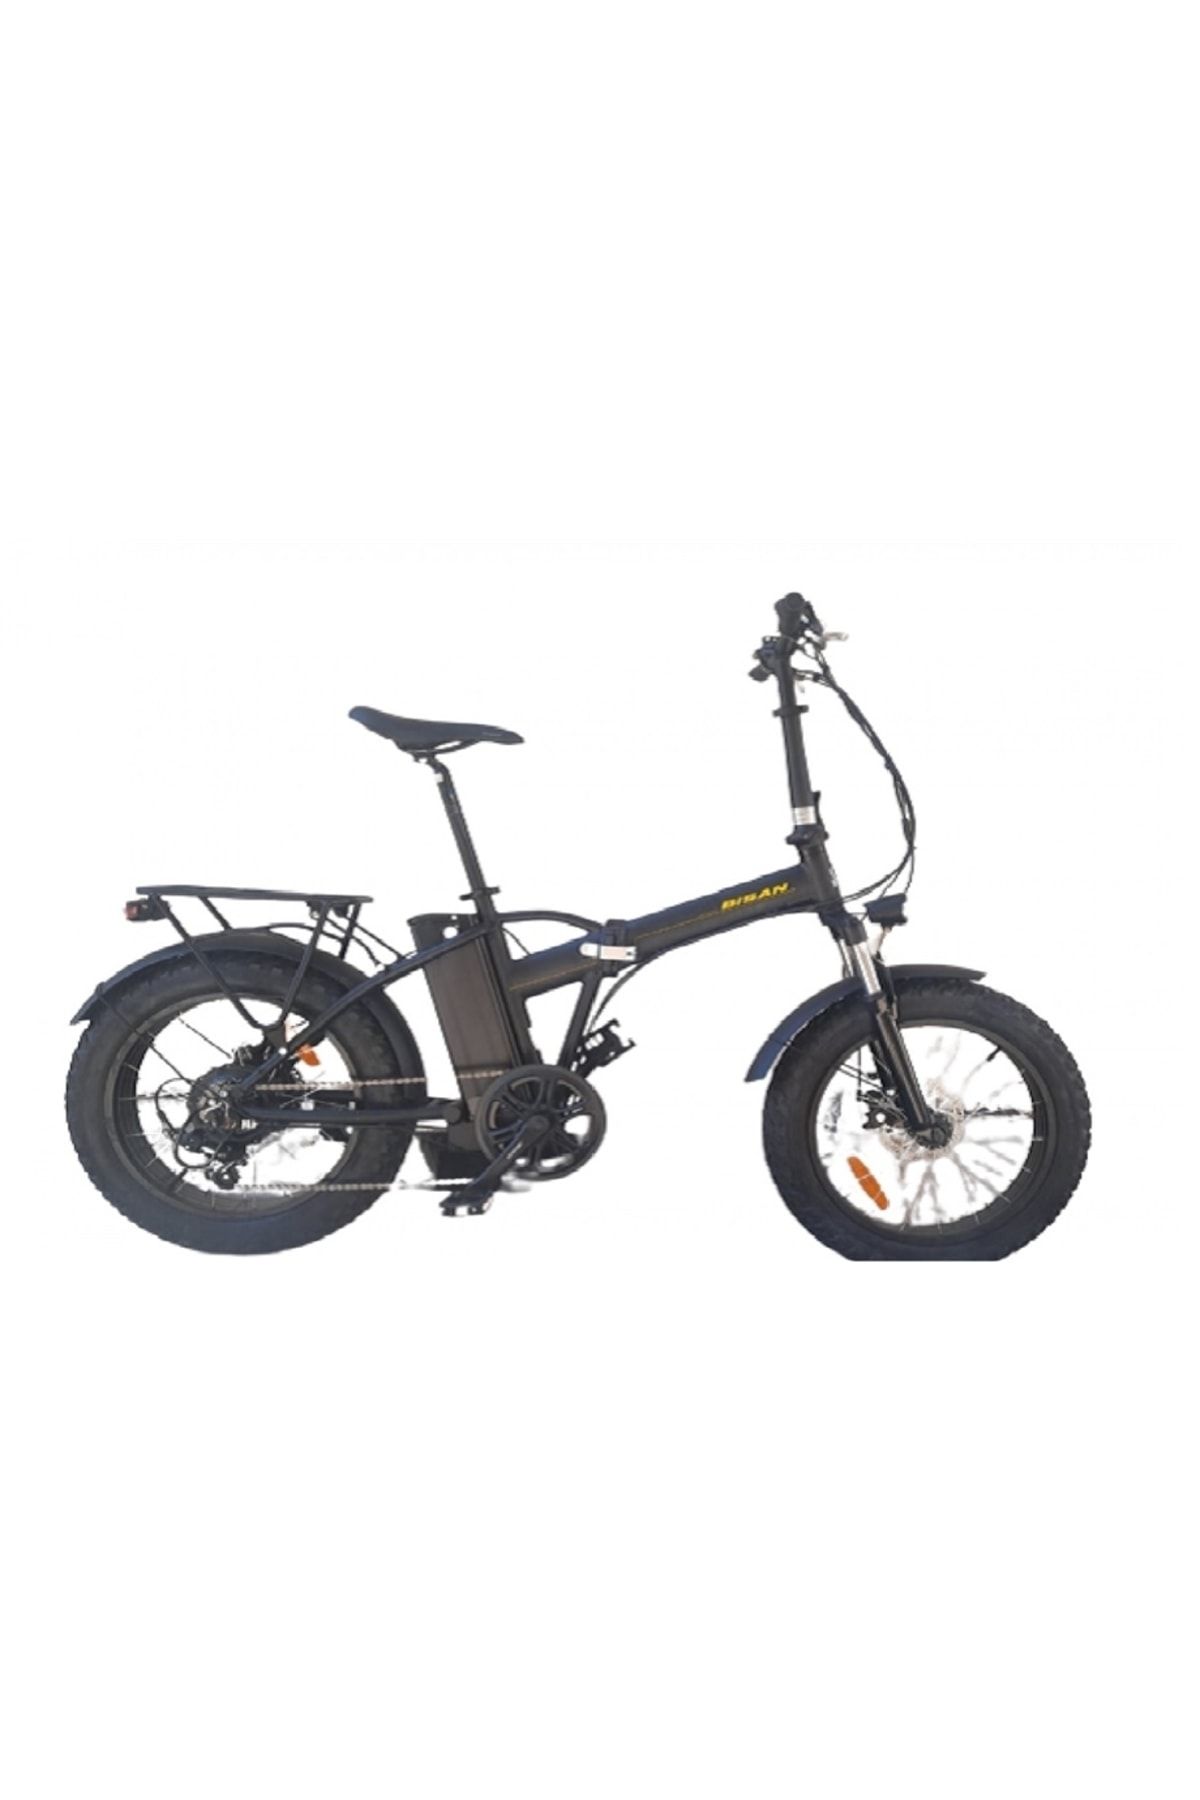 Bisan E-foldıng F2 Elektrıklı Katlanır Bisikleti Md 43cm 20 Jant 7 Vites Siyah Sarı